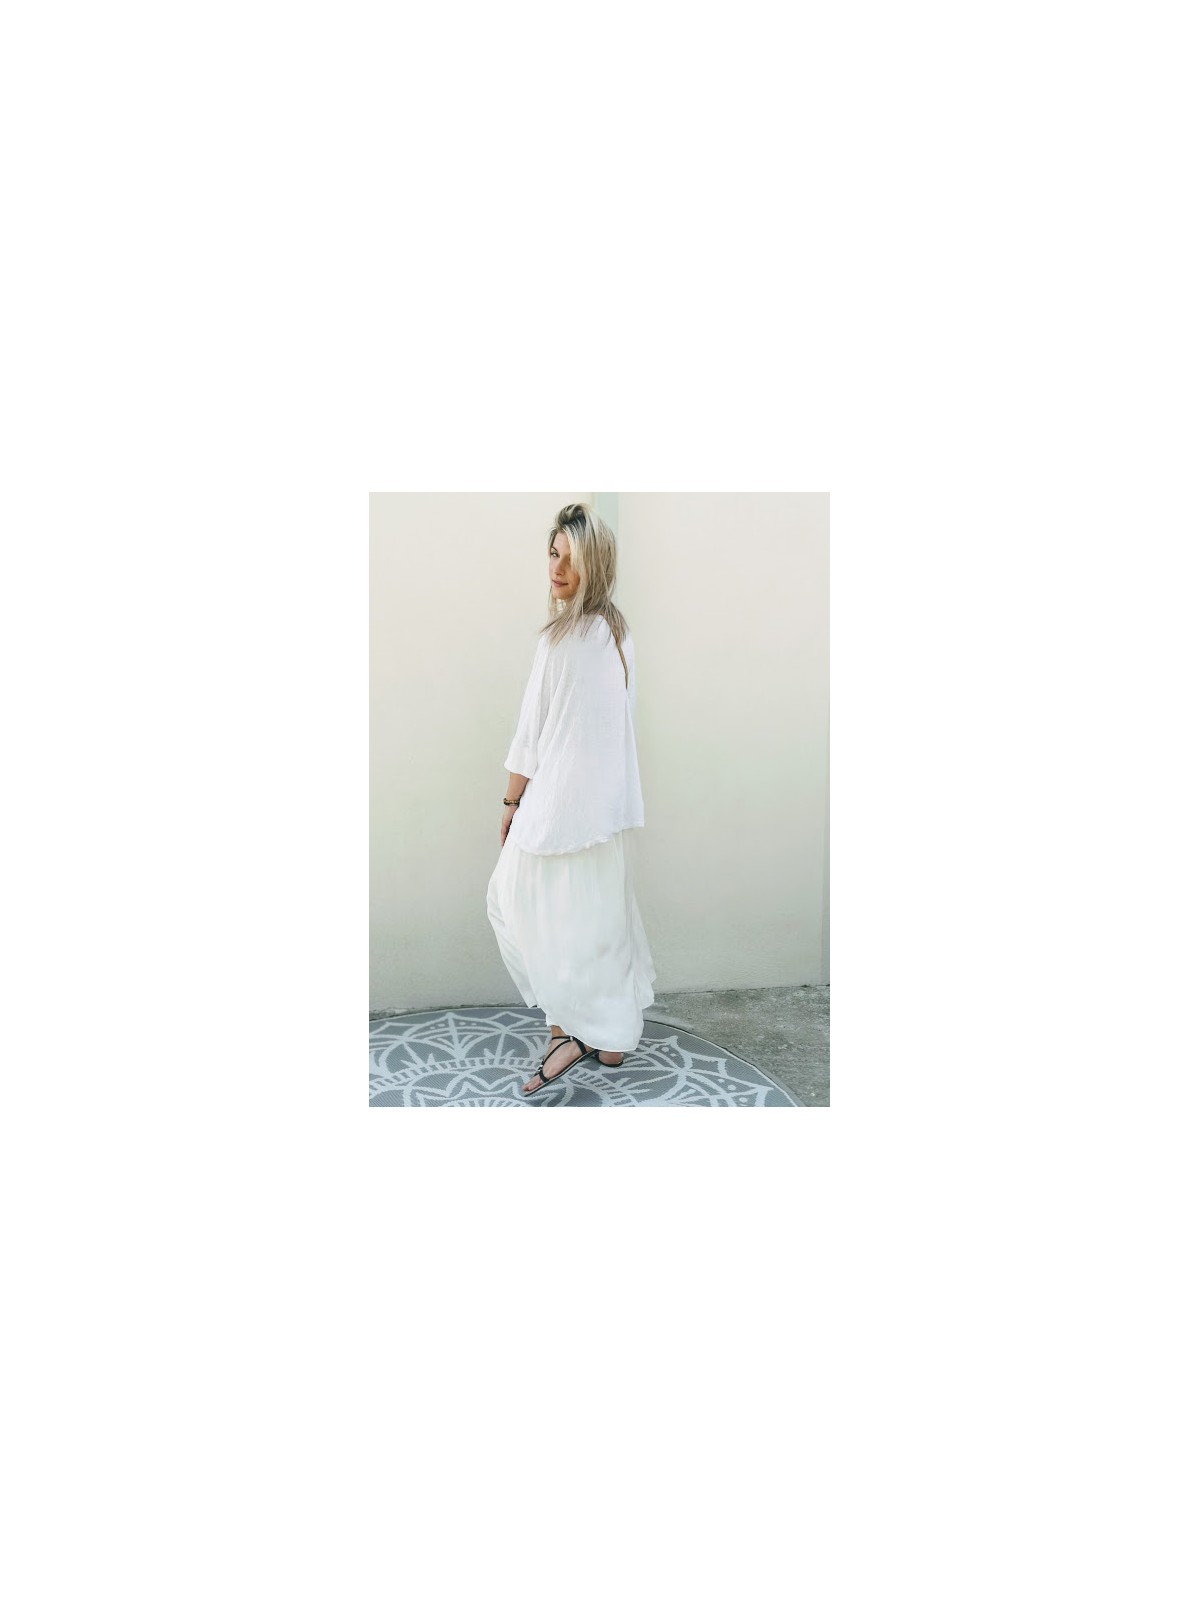 Jupe blanche longueur cheville |1 vue portée en entier de profil | Tilleulmenthe boutique de mode femme en ligne